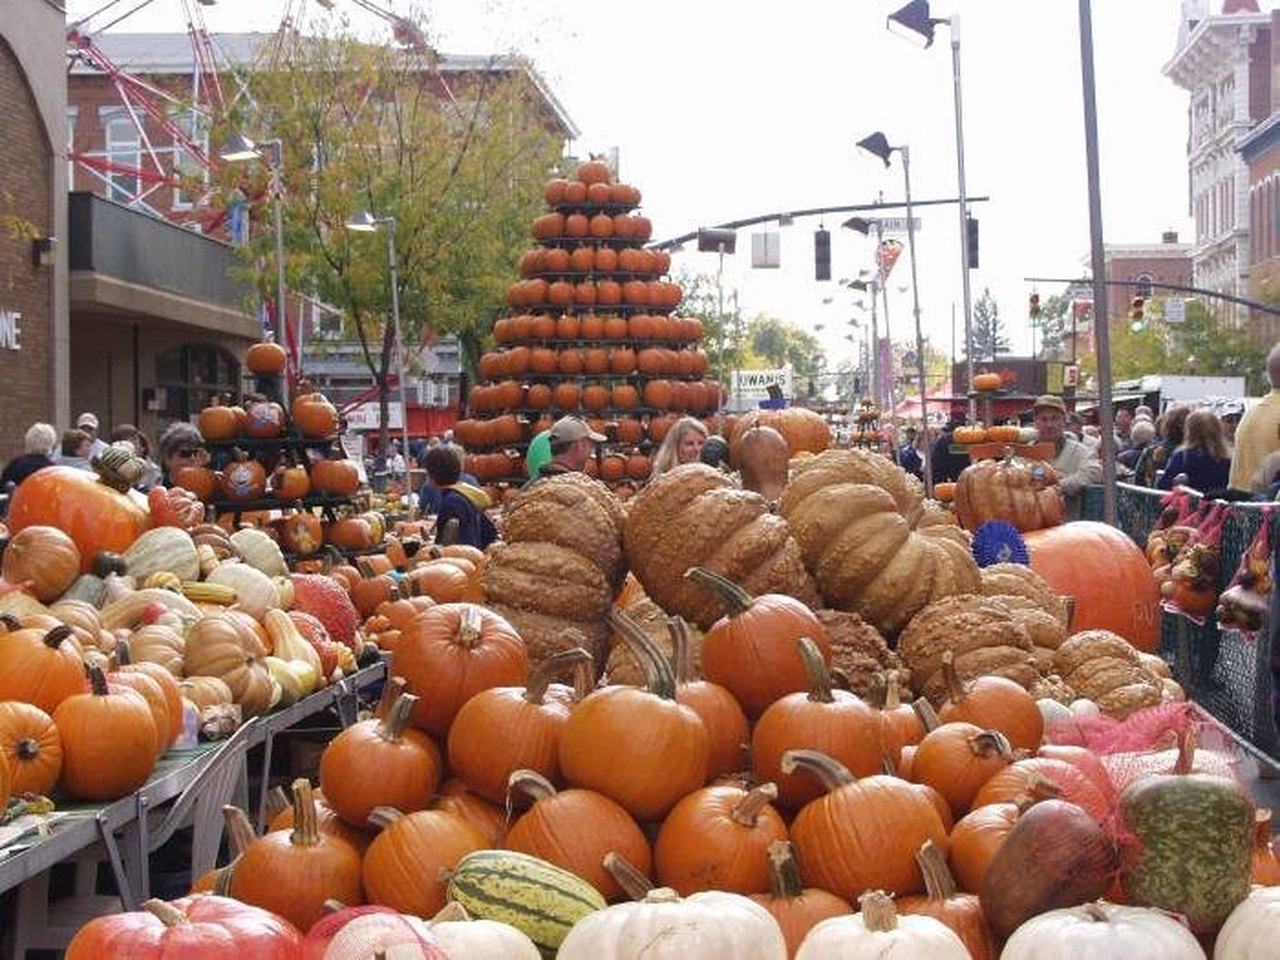 The World's Largest Pumpkin Festival The Circleville Pumpkin Show